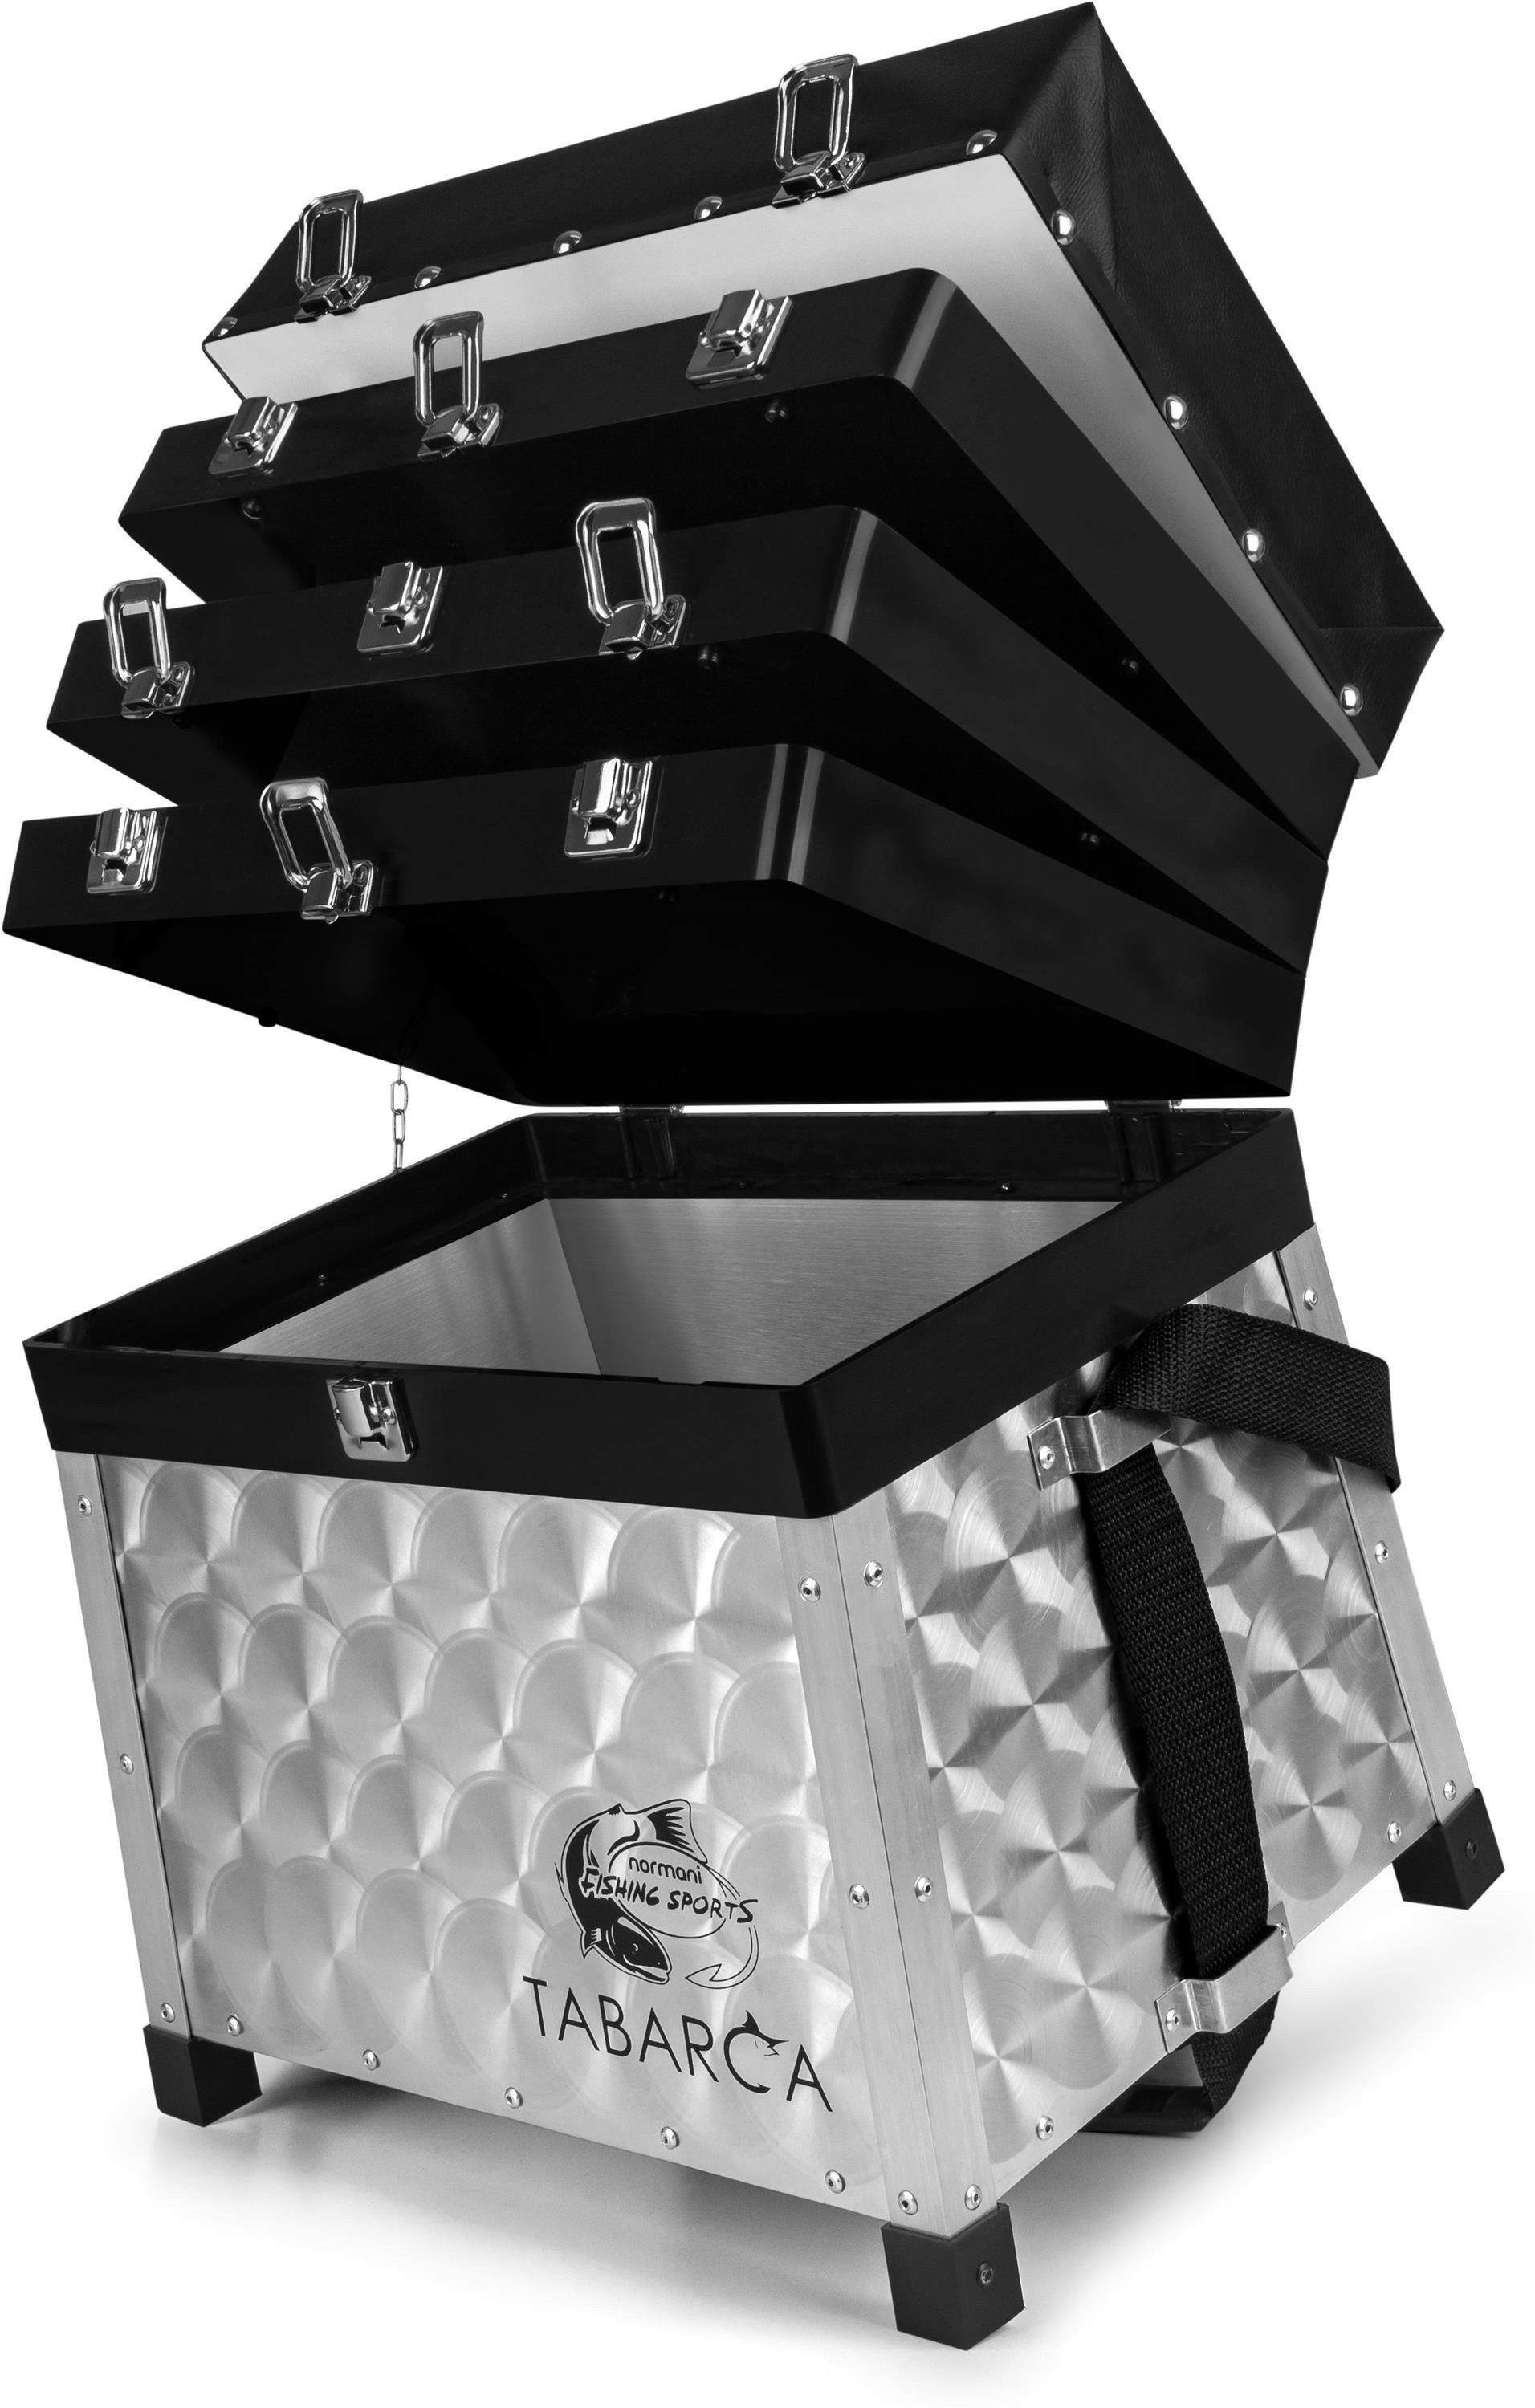 normani Angelkoffer Aluminium Sitzkiepe Tabarca, Angelbox Gerätekasten  Sitzkasten Angelkiste mit Sitzfunktion bis 150 Kg